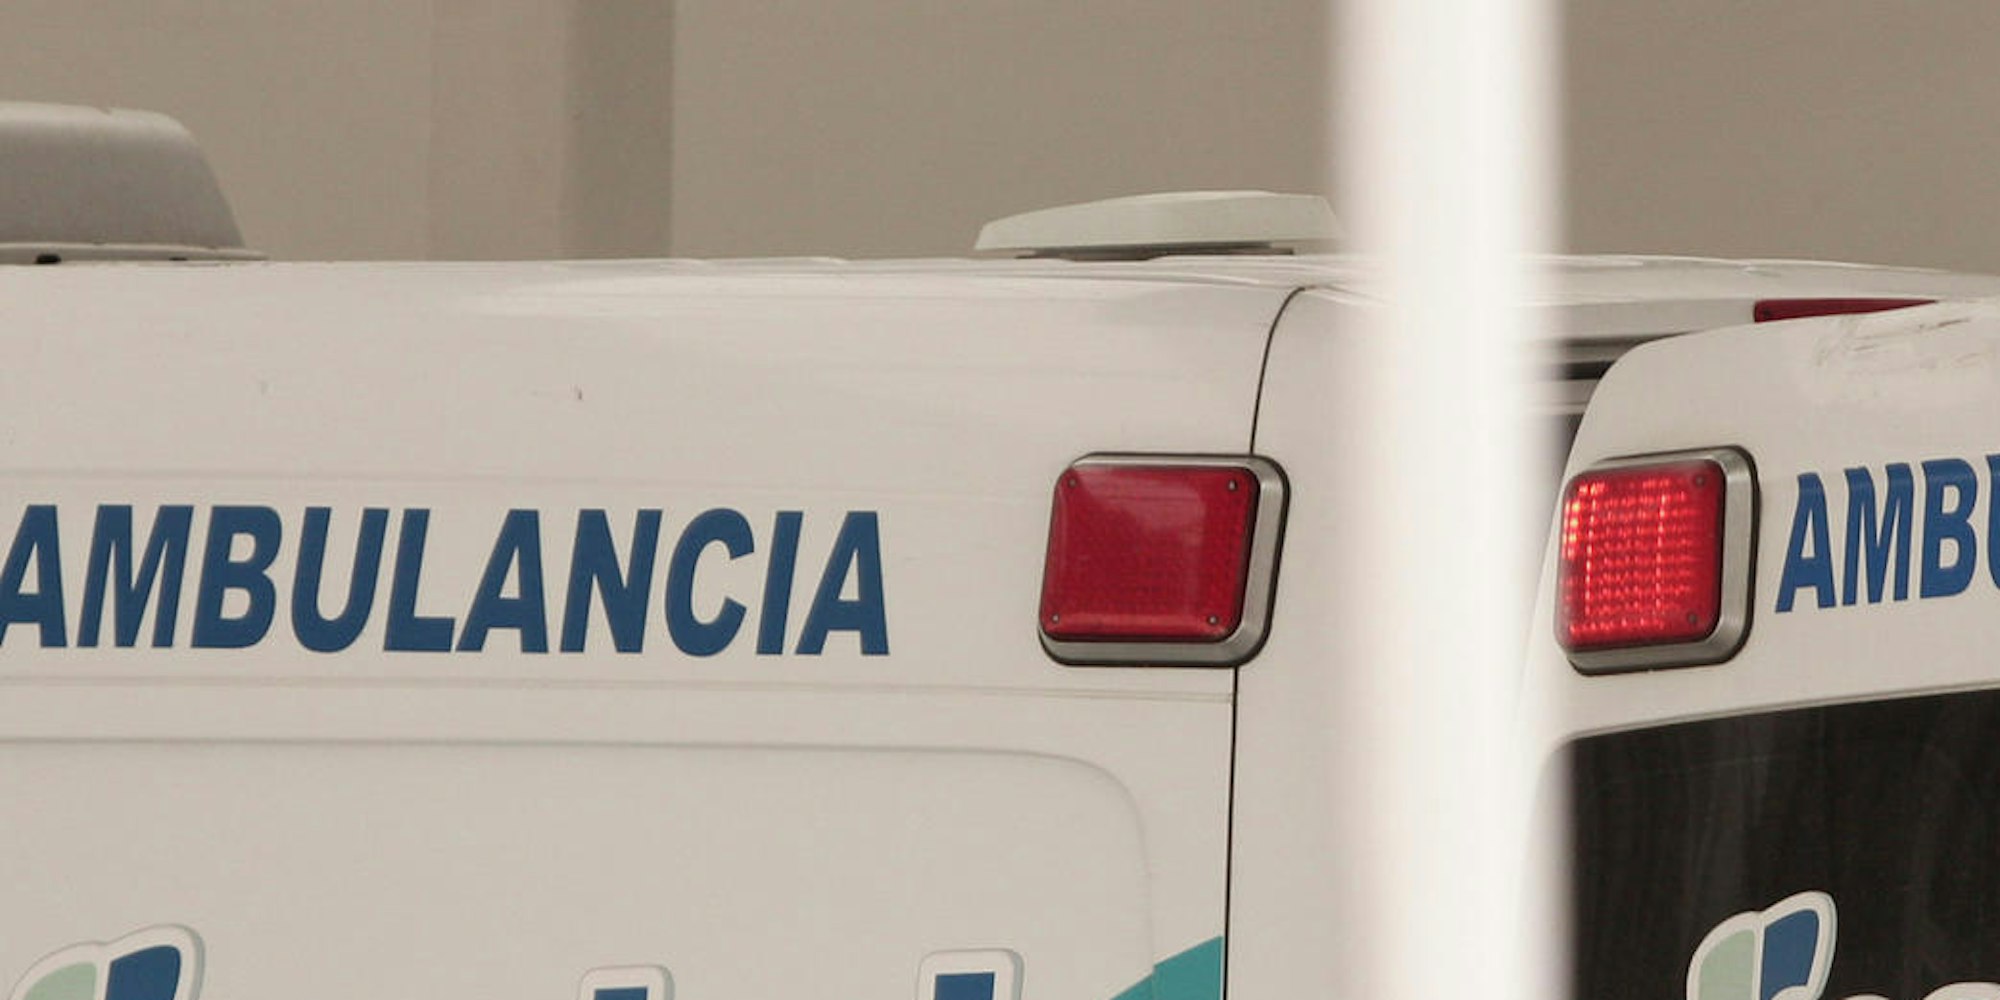 Ambulance Panama